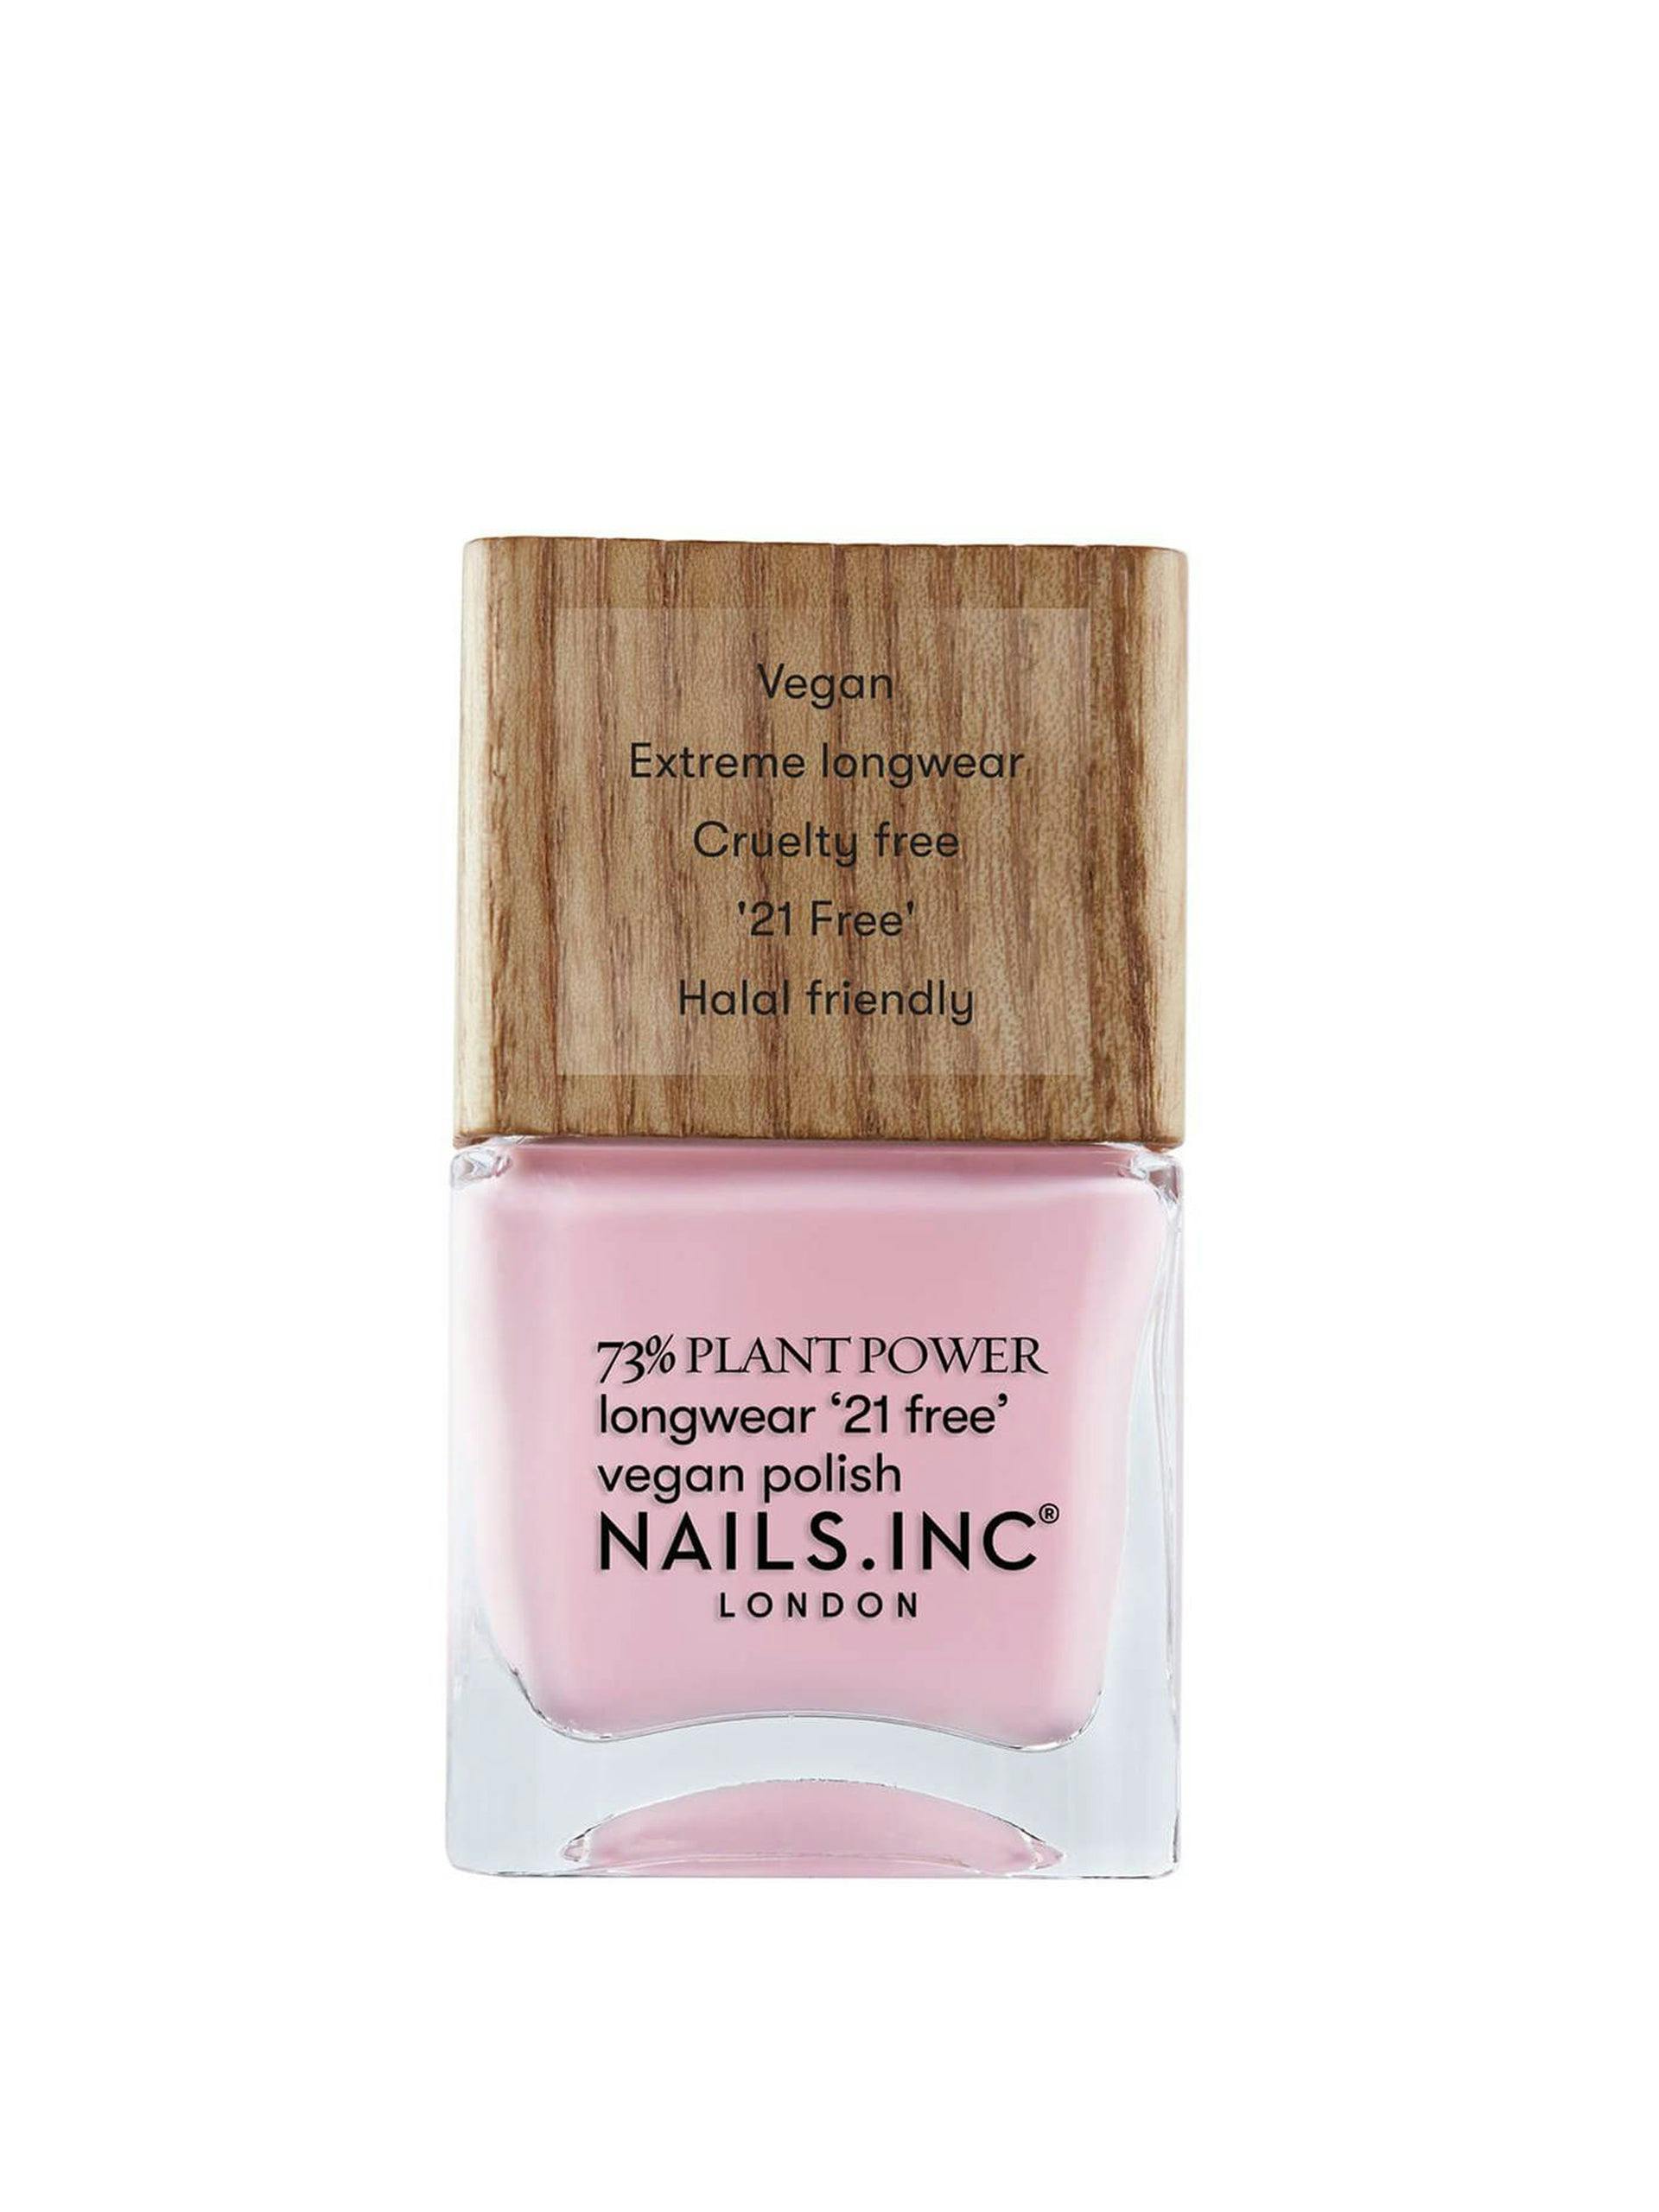 Baby pink nail polish